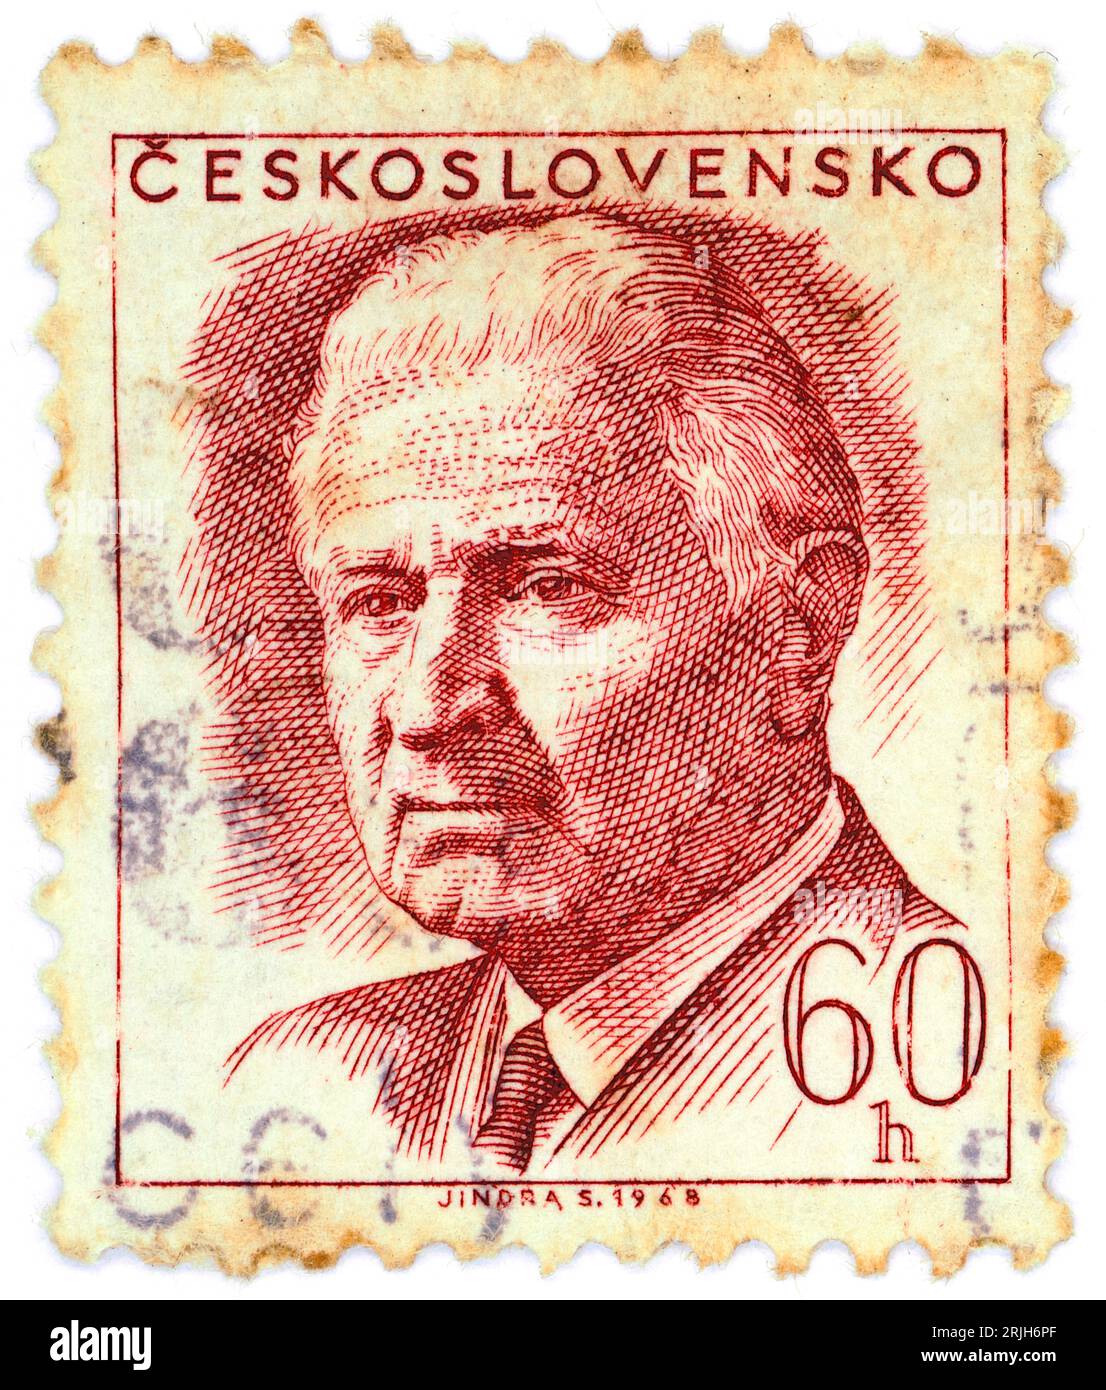 Ludvík Svoboda (1895 – 1979). Briefmarke, ausgestellt in der Tschechoslowakei 1968. Ludvík Svoboda war ein tschechischer General und Politiker. Er kämpfte in beiden Weltkriegen, für die er als Nationalheld galt, und diente später von 1968 bis 1975 als Präsident der Tschechoslowakei. Stockfoto